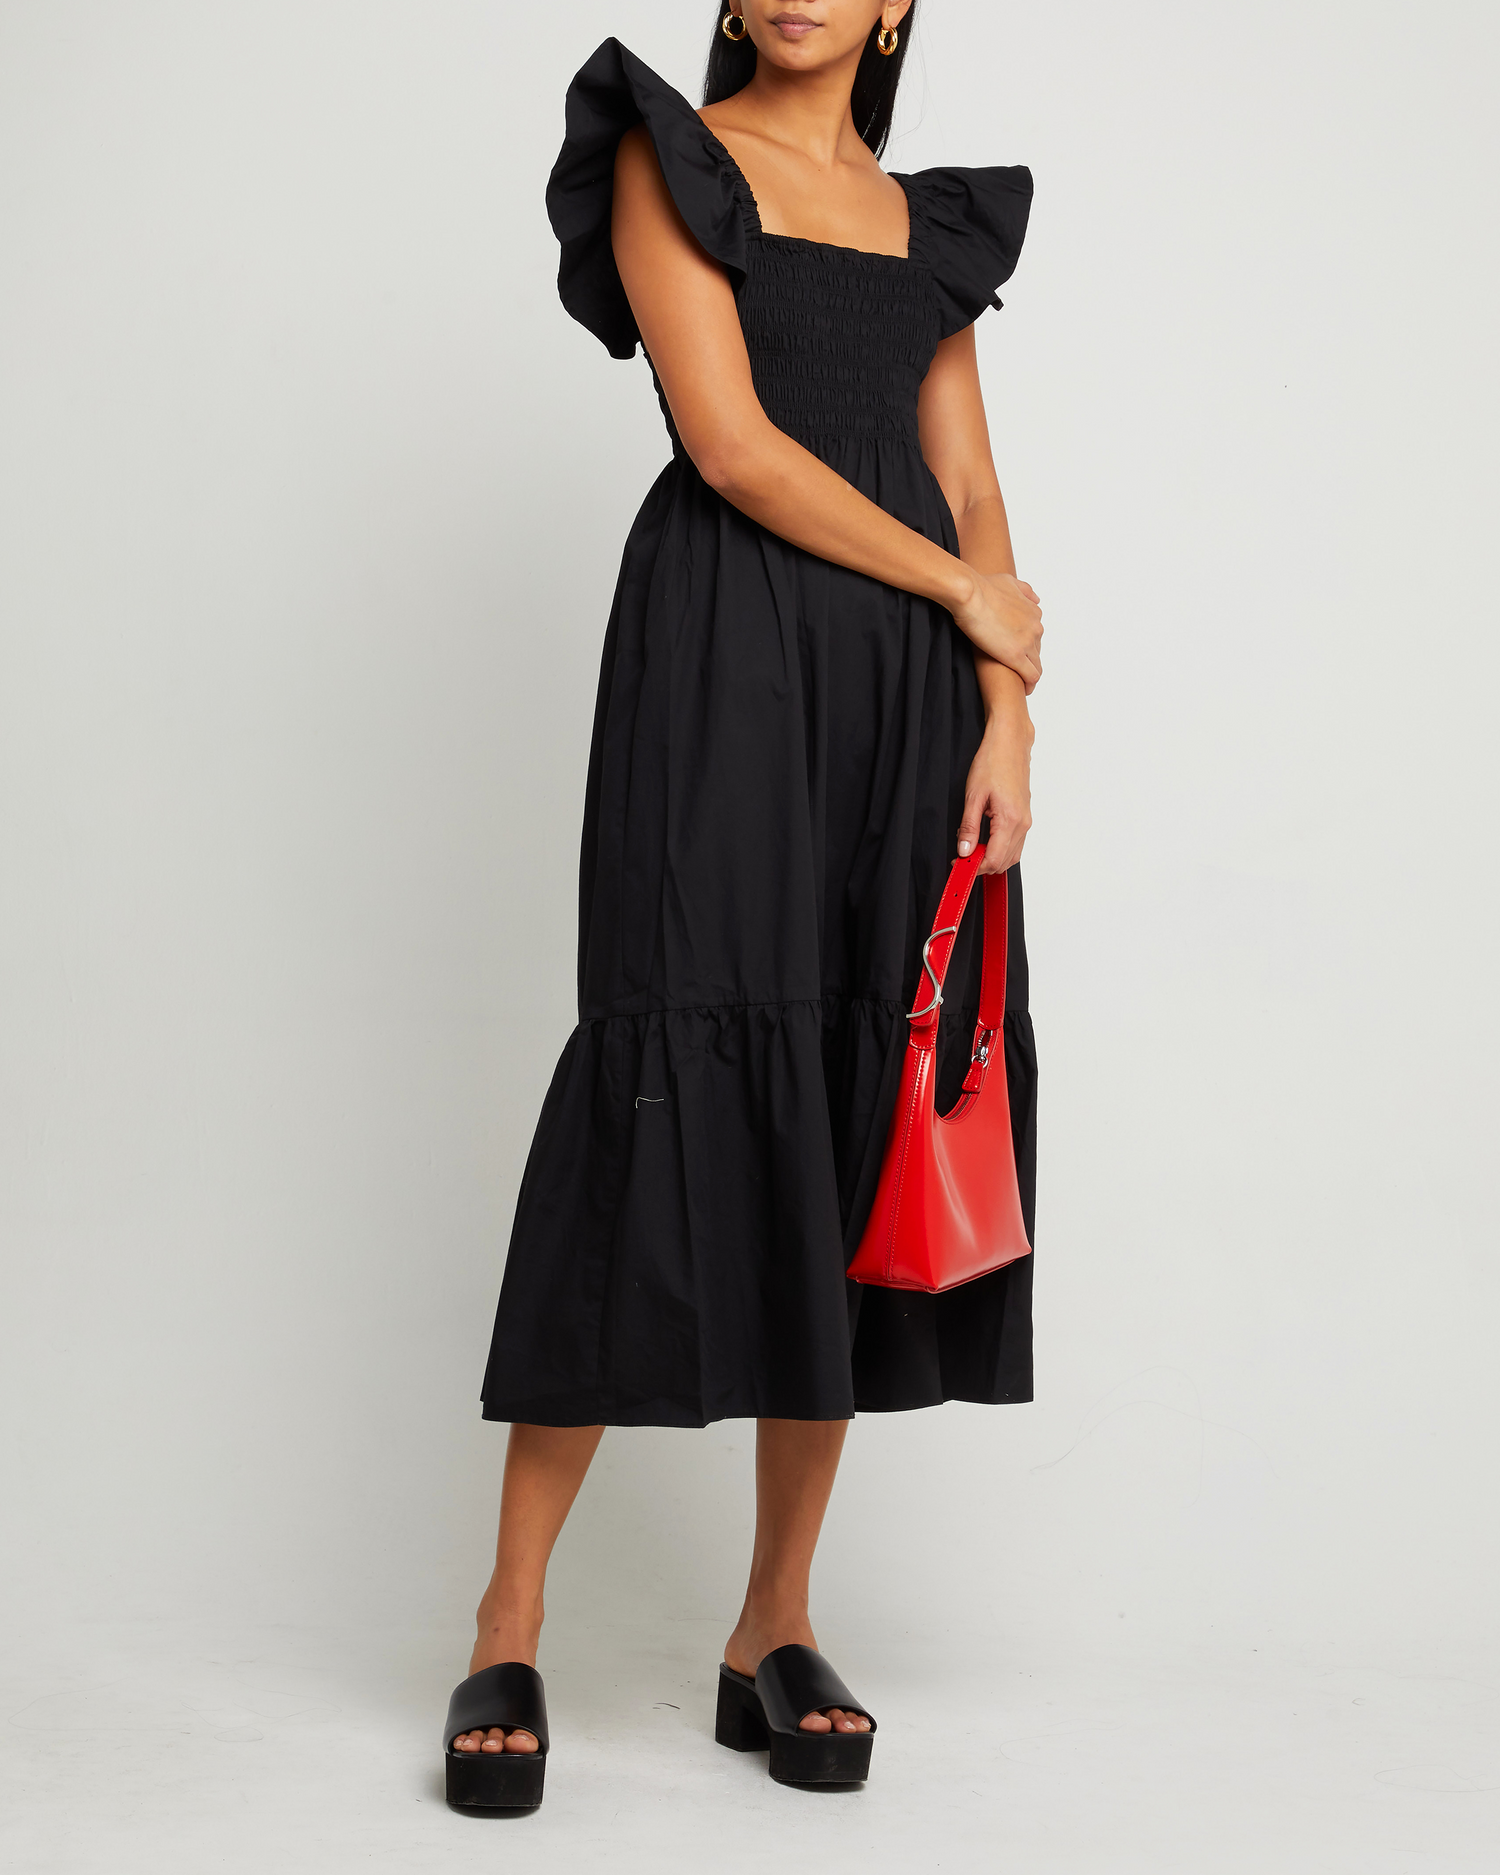 Fourth image of Tuscany Dress, a black maxi dress, smocked bodice, ruffled cap sleeves, pockets